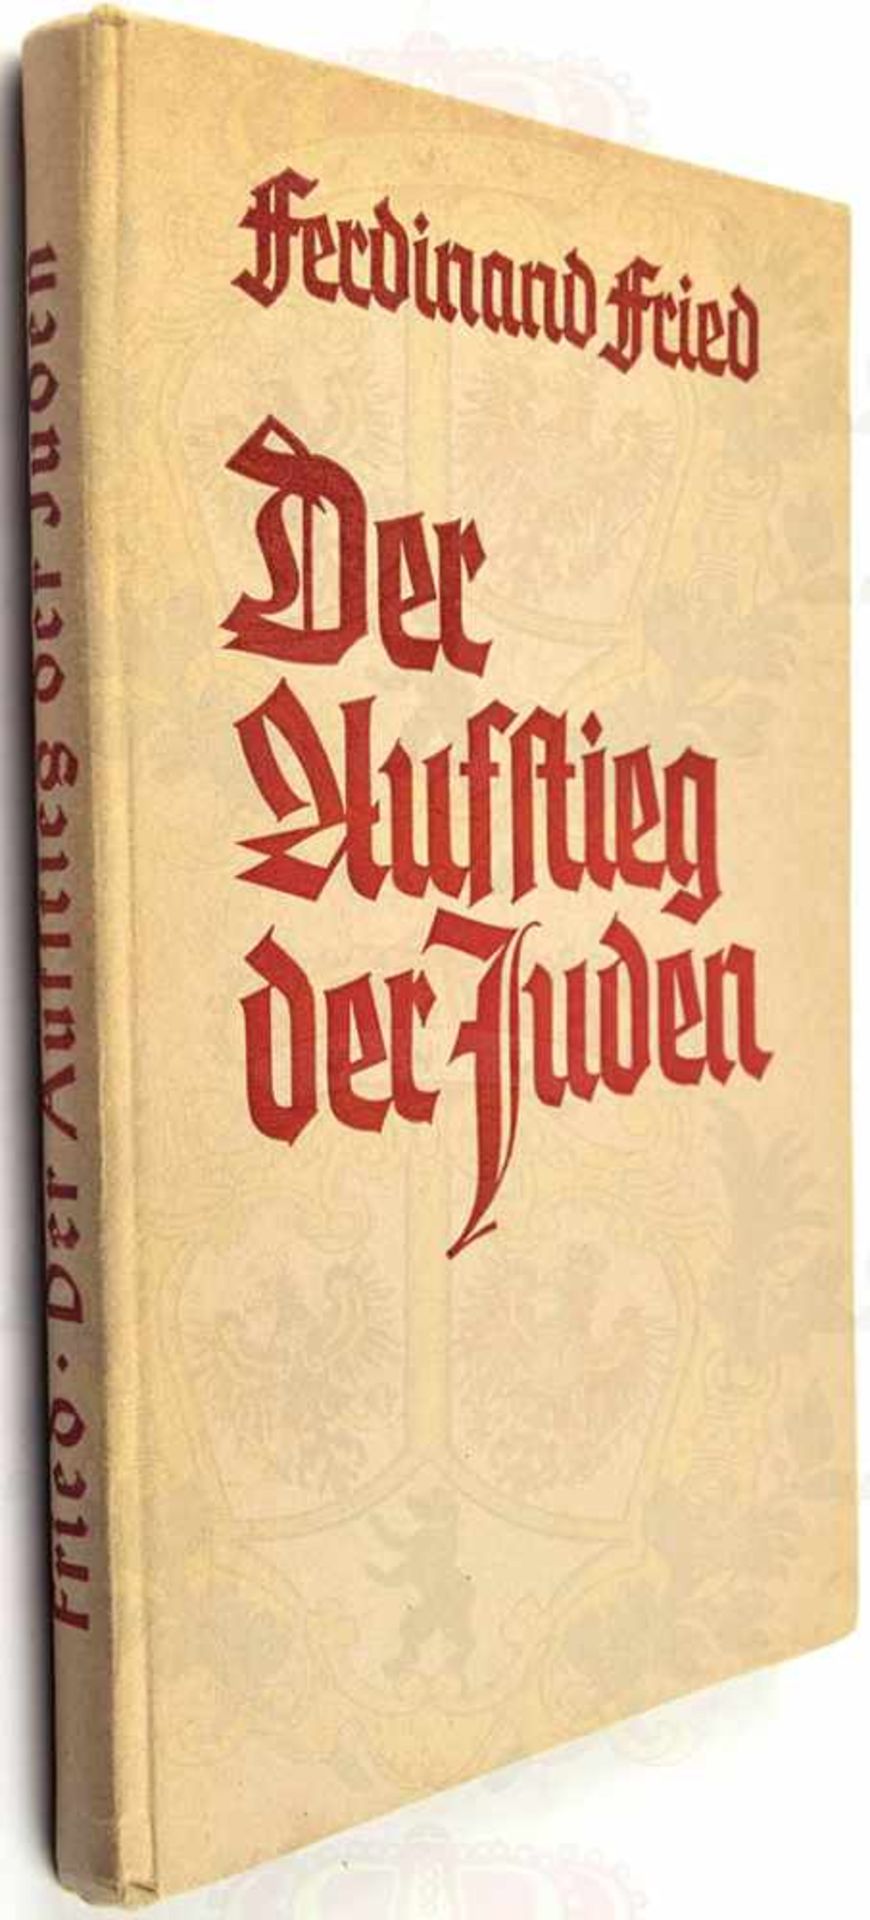 DER AUFSTIEG DER JUDEN, Verlag Blut und Boden, Goslar 1937, 155 S., einige Abb., einige Seiten